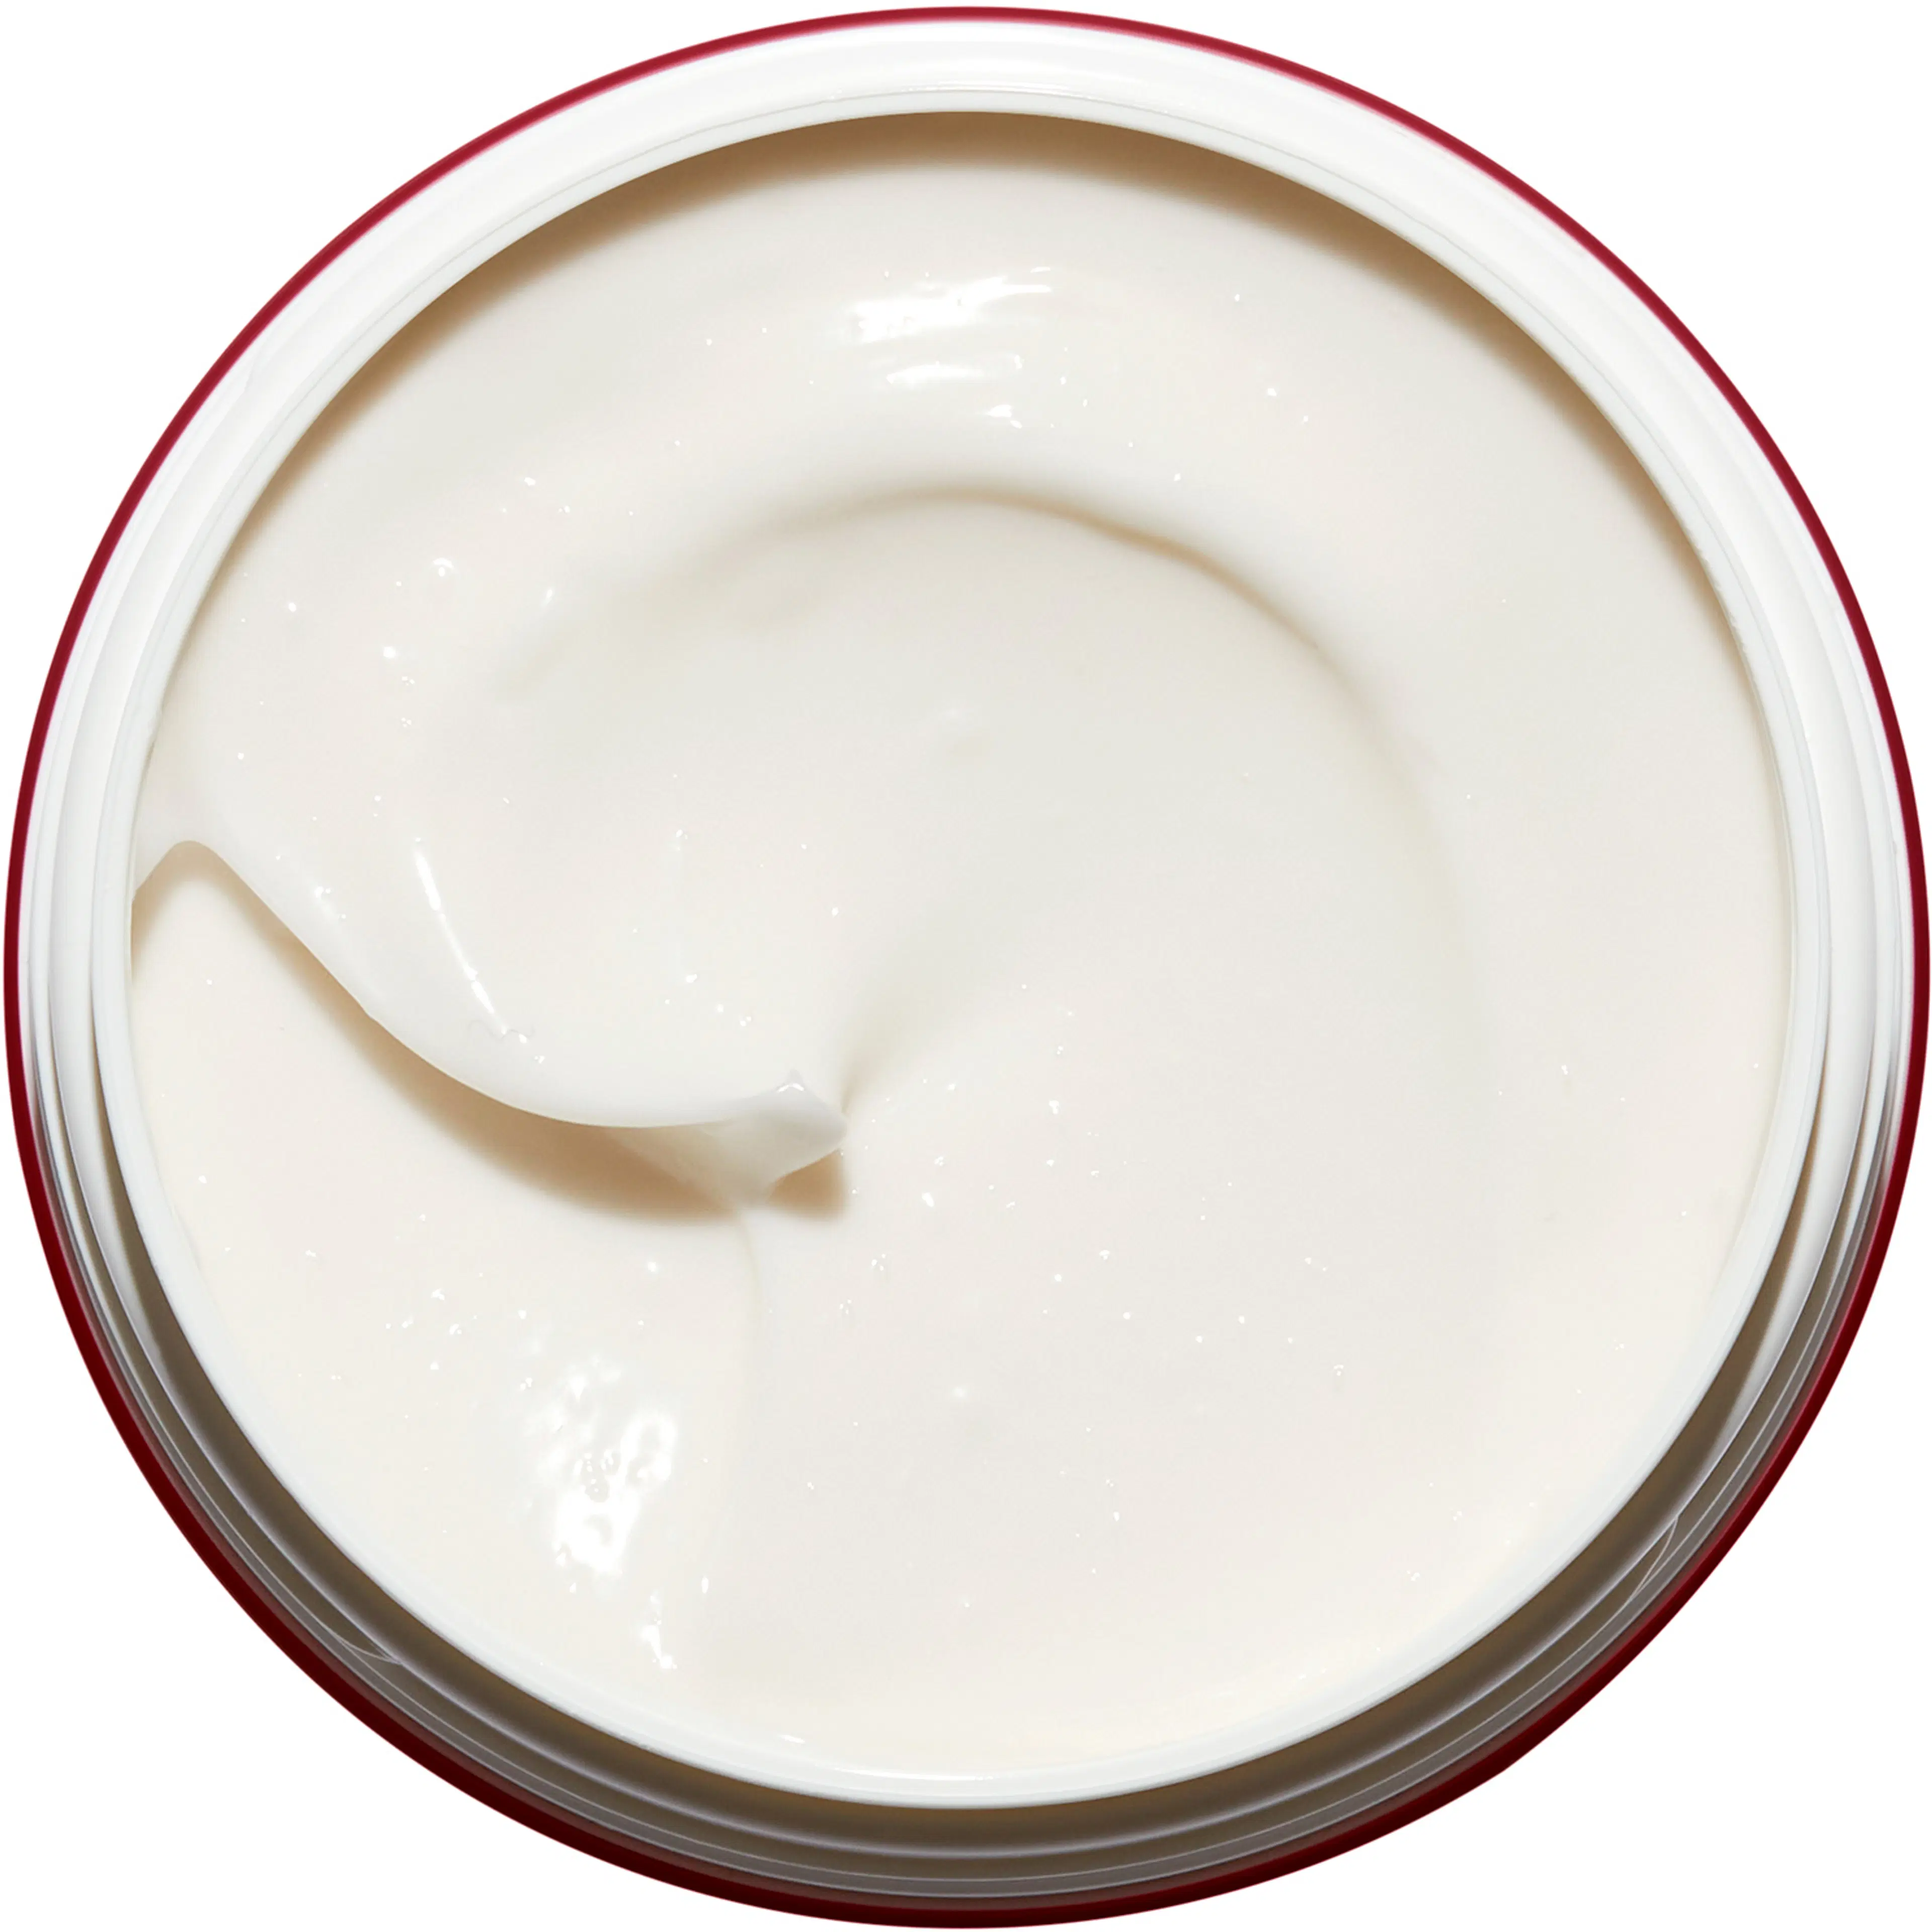 Clarins Body Shaping Cream kiinteyttävä vartalovoide 200 ml